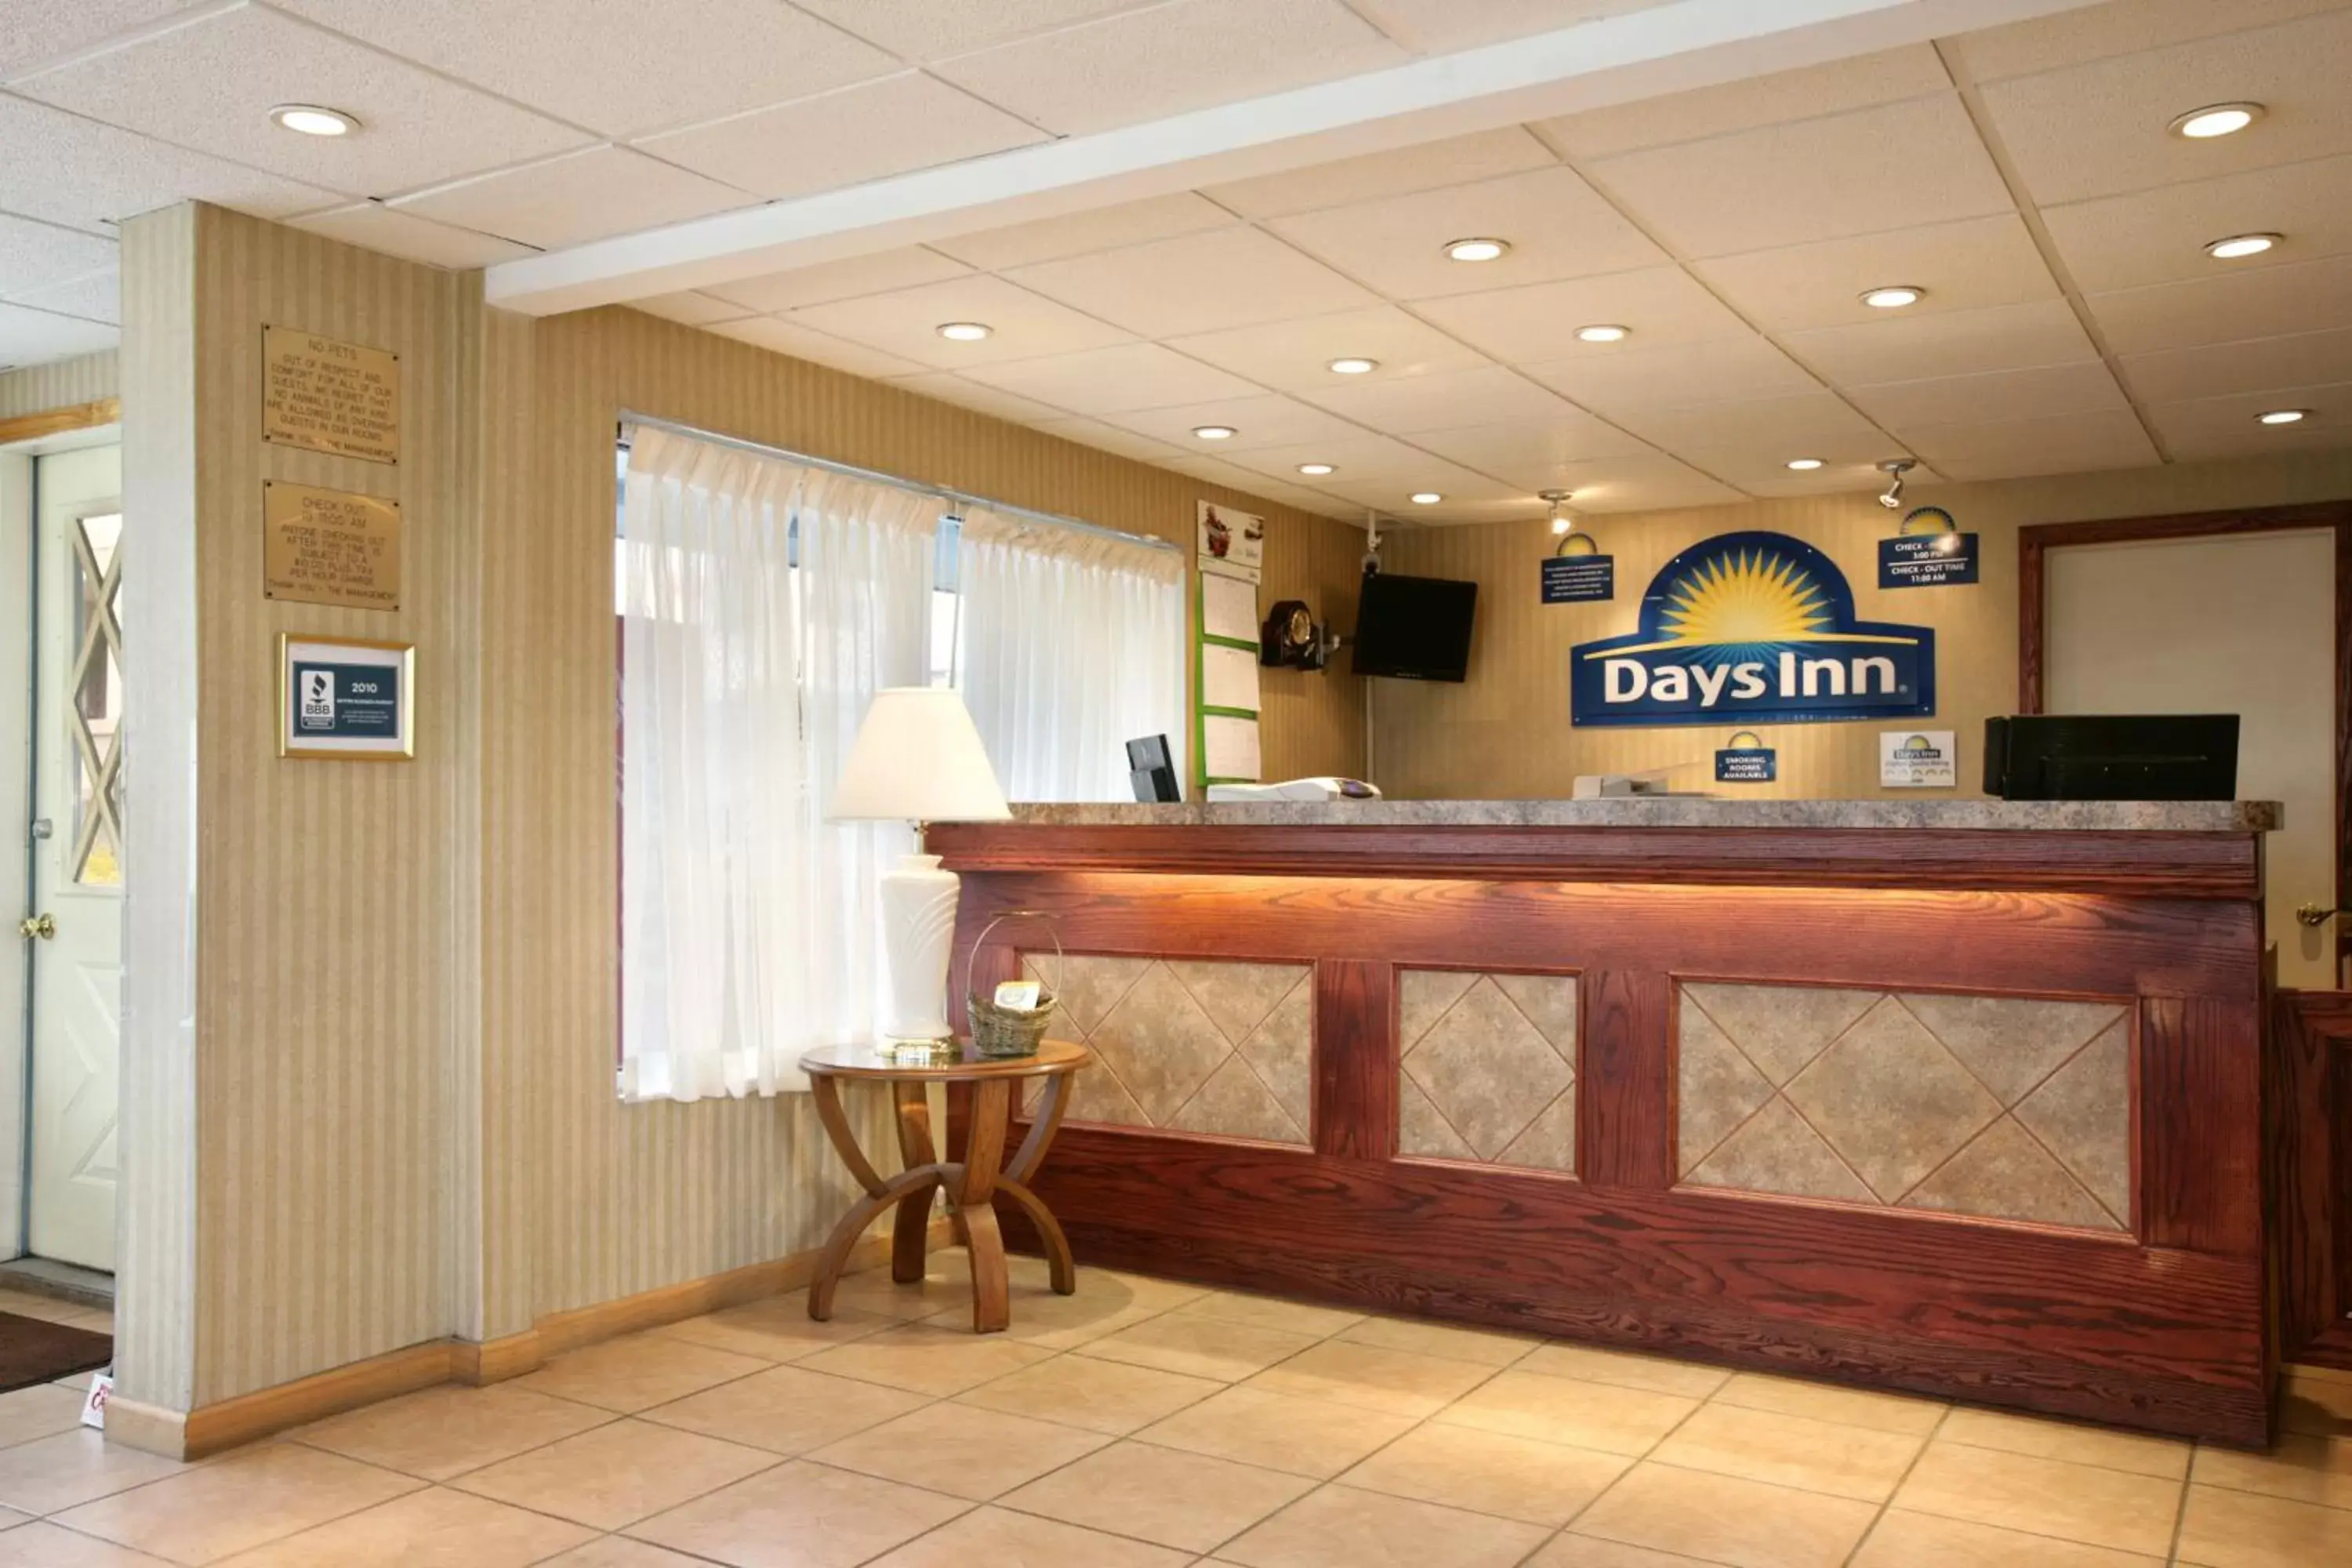 Lobby or reception, Lobby/Reception in Days Inn by Wyndham Tannersville